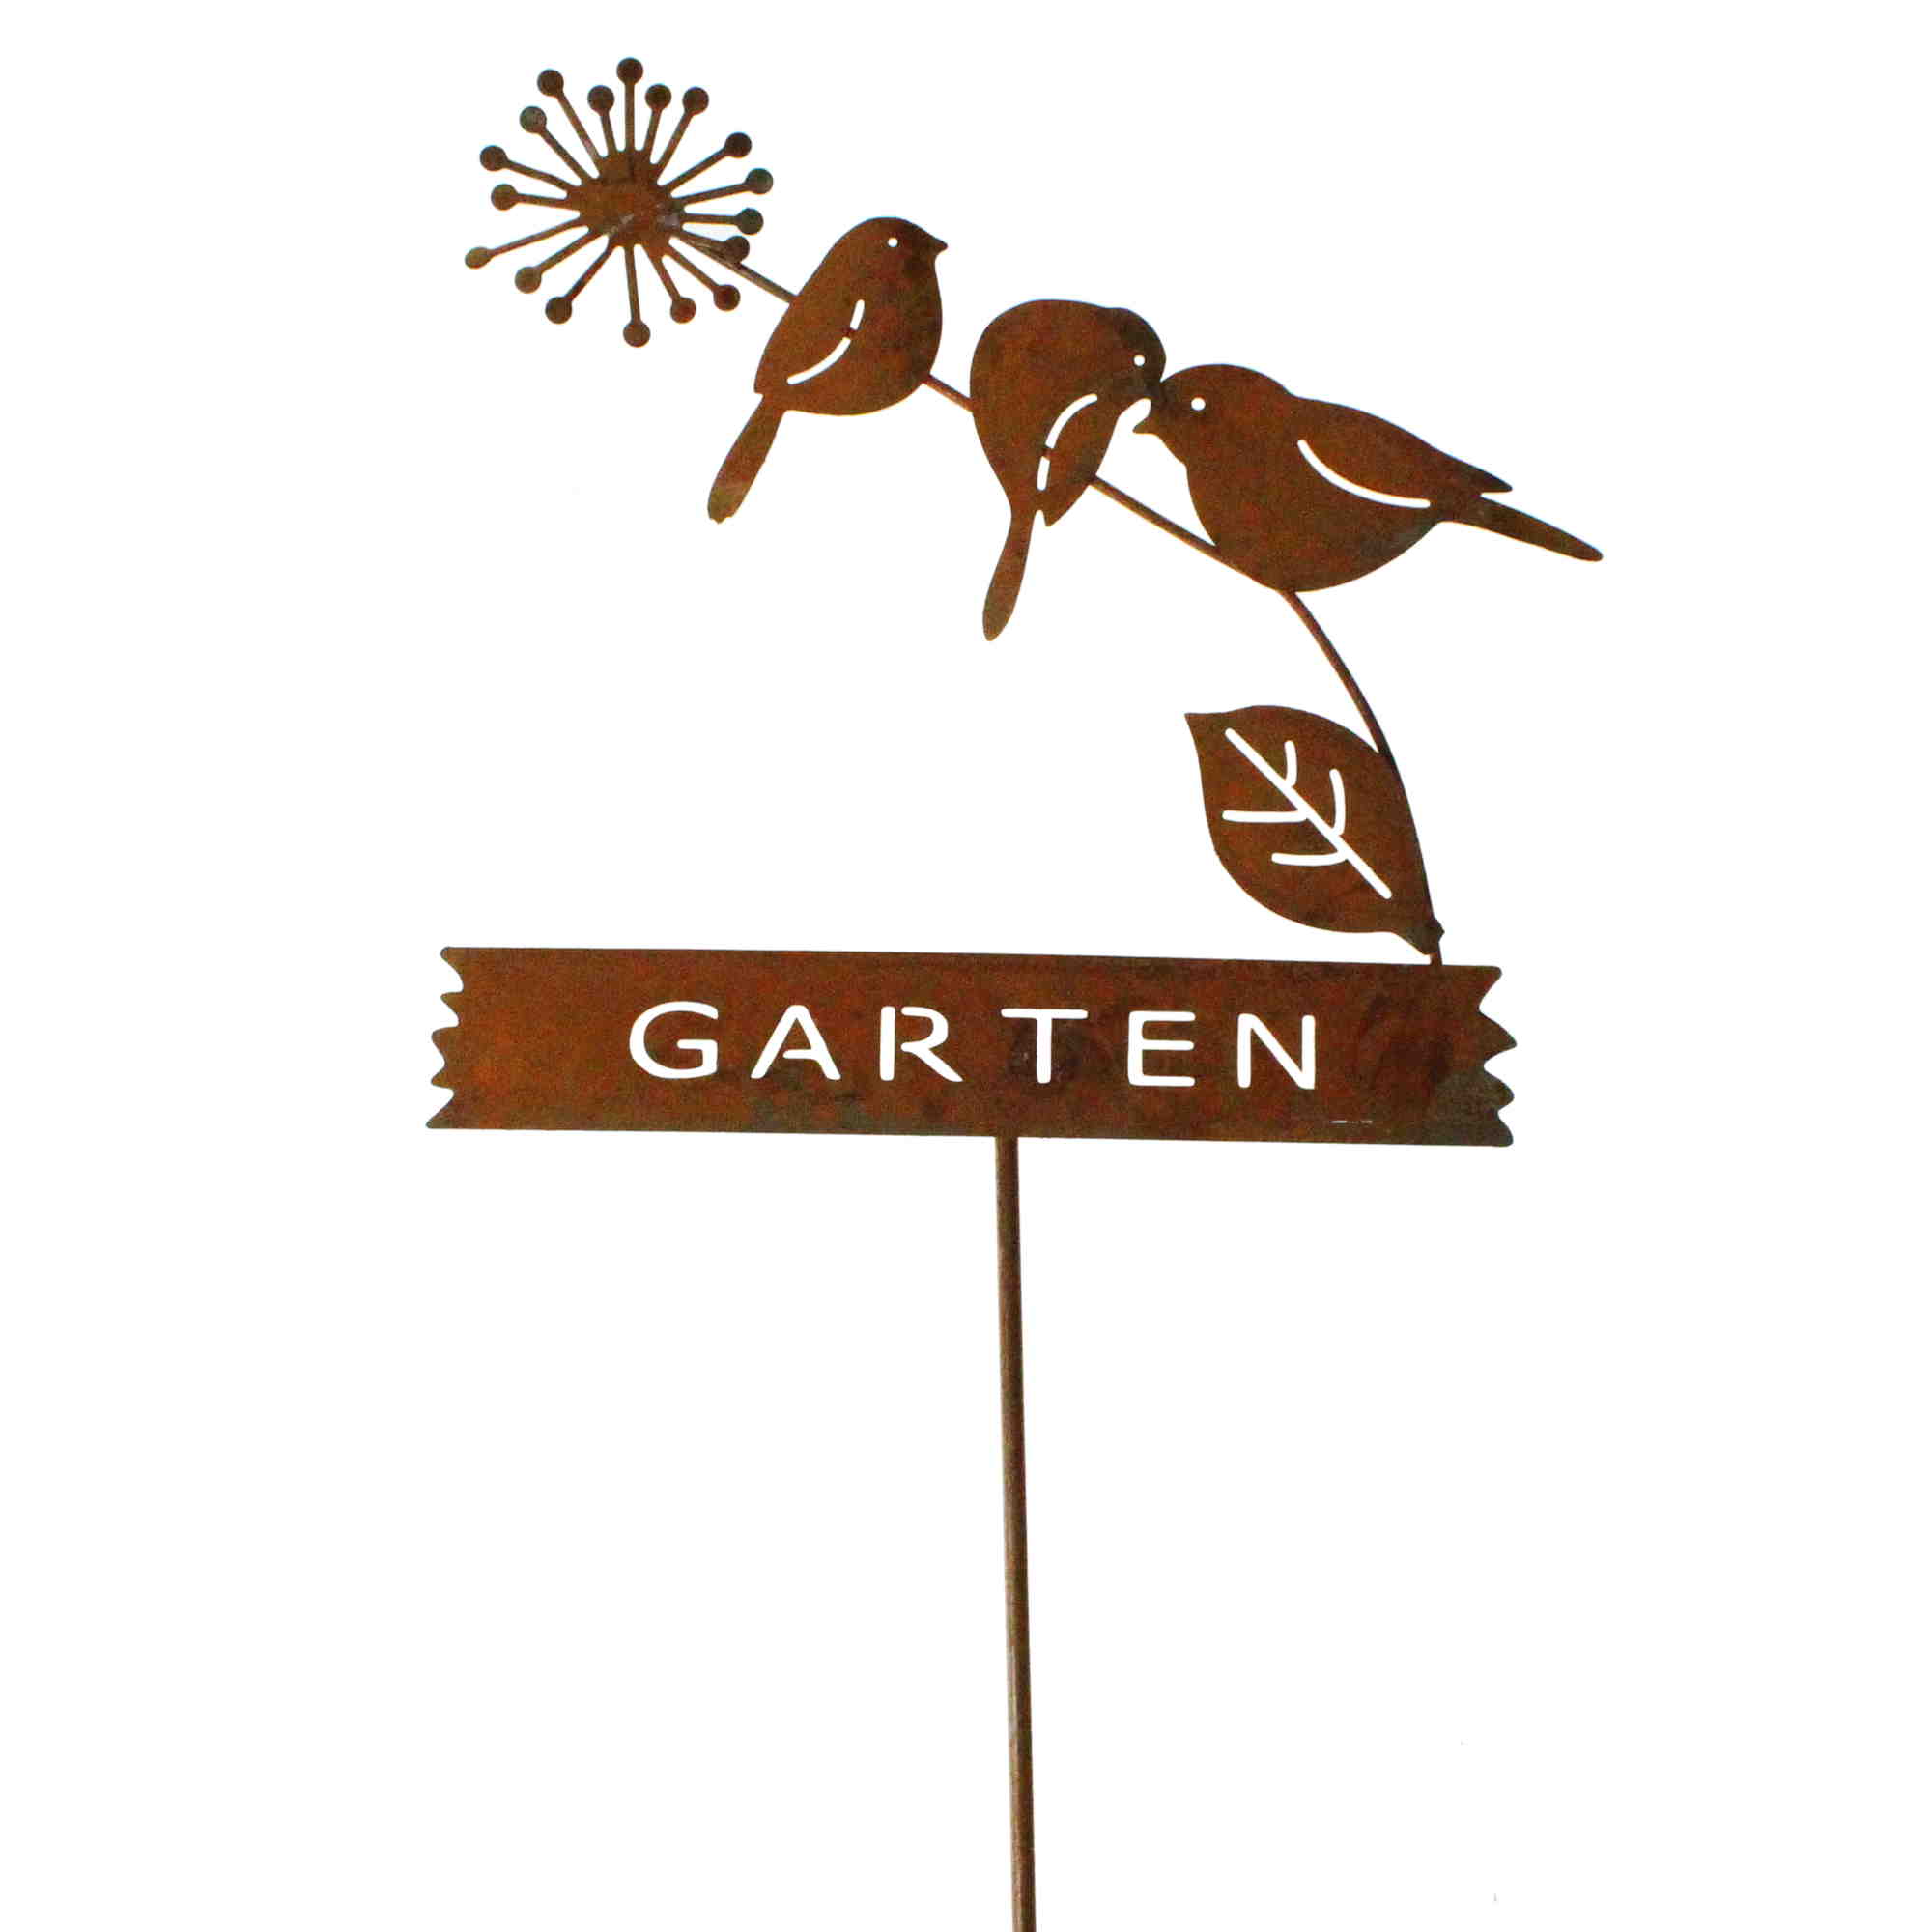 CandyCare Vogel Gartendeko Rost Metalbird Deko für Garten,Gartenstecker Metall mit Schraube für Deko Garten Holz Gartendeko Figuren 5PCS